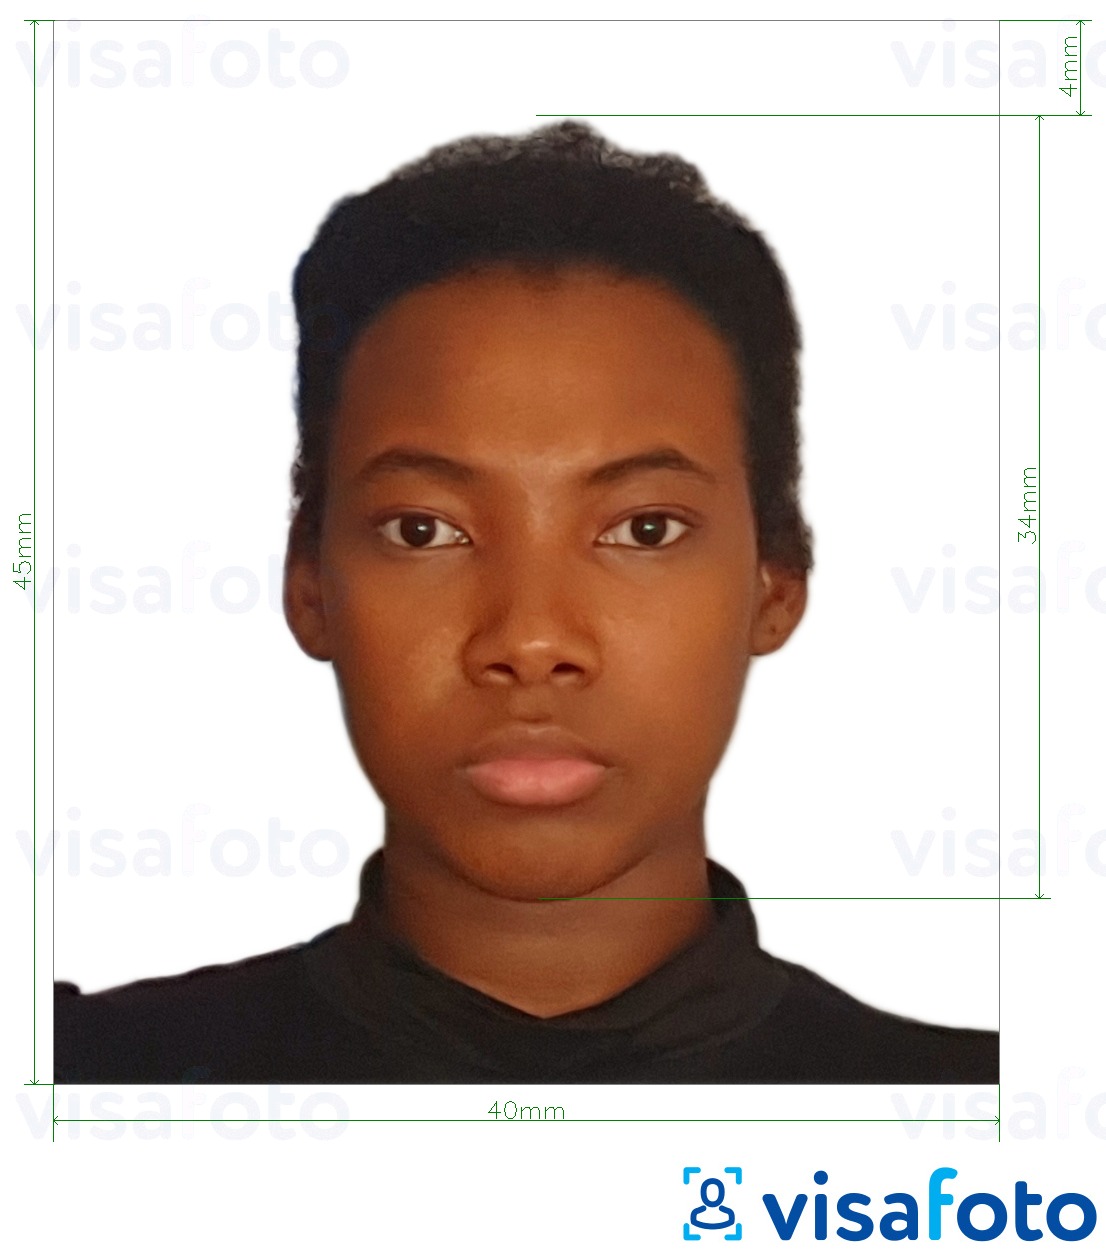 Voorbeeld van foto voor Tanzania paspoort 40x45 mm (4x4.5 cm) met exacte maatspecificatie